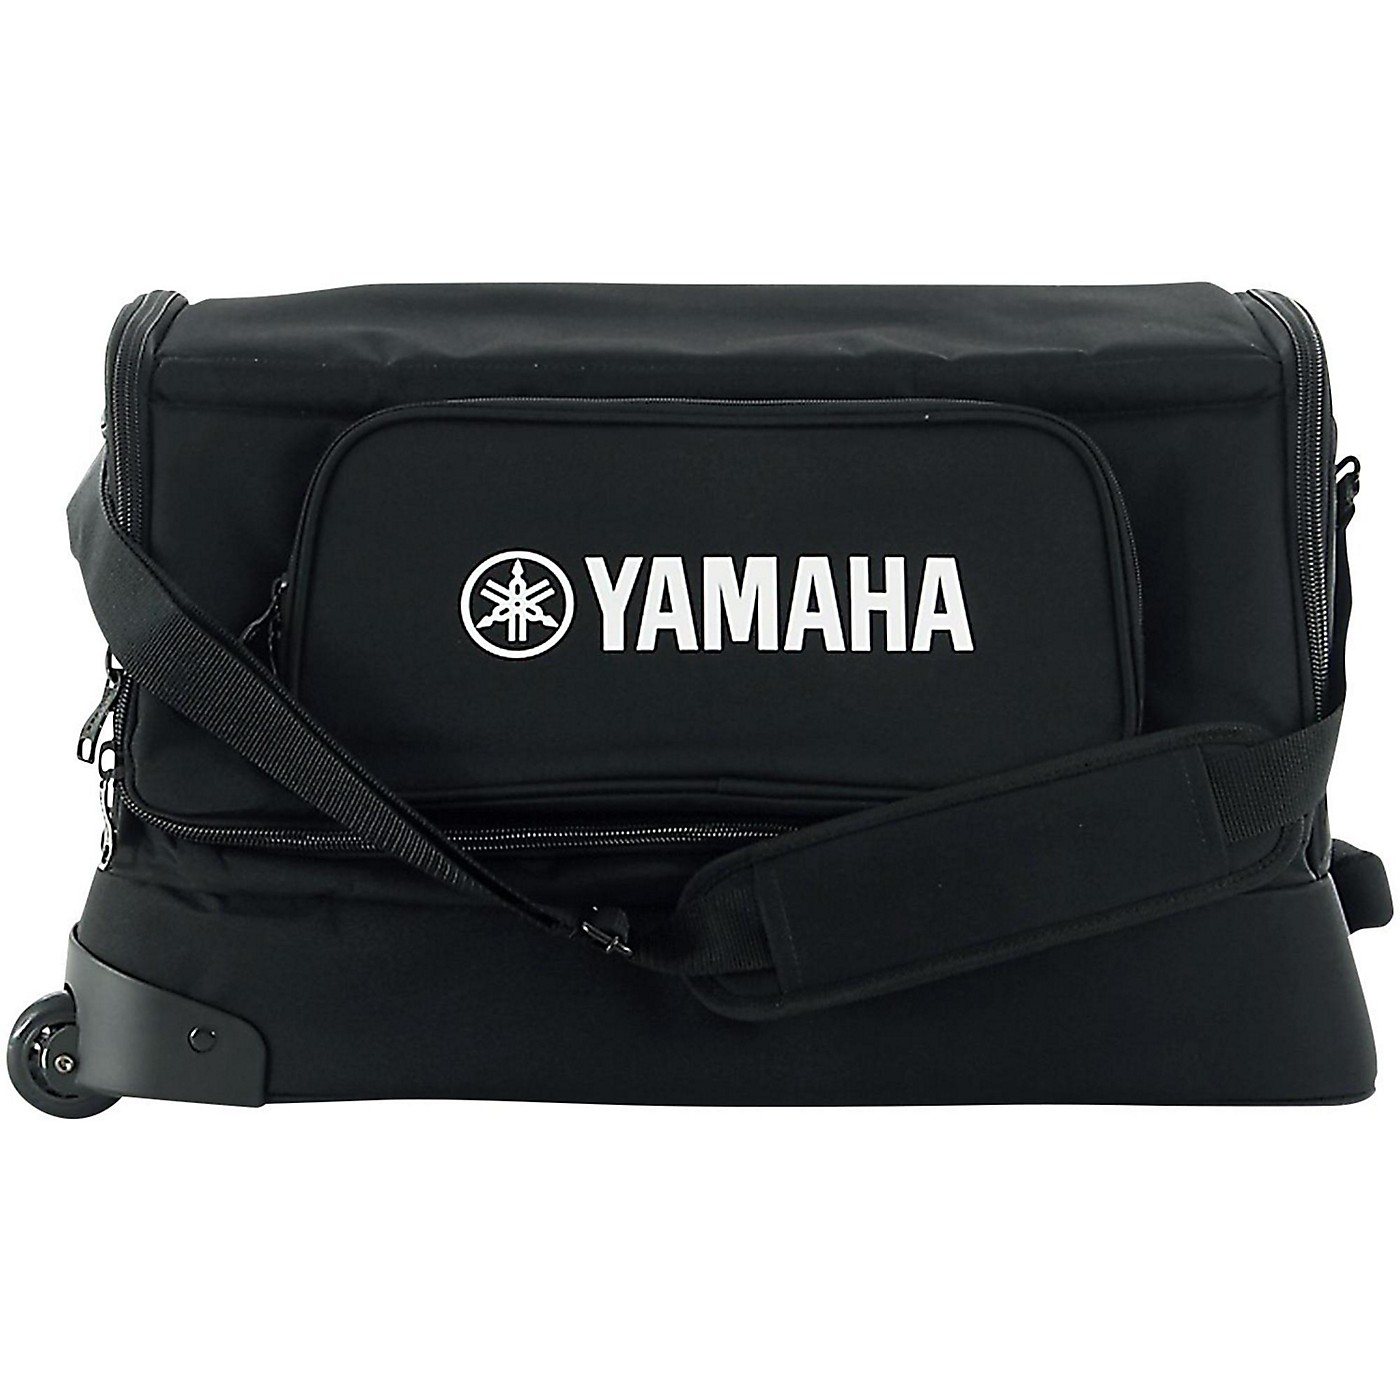 Yamaha STAGEPAS 600I Soft Rolling Case thumbnail